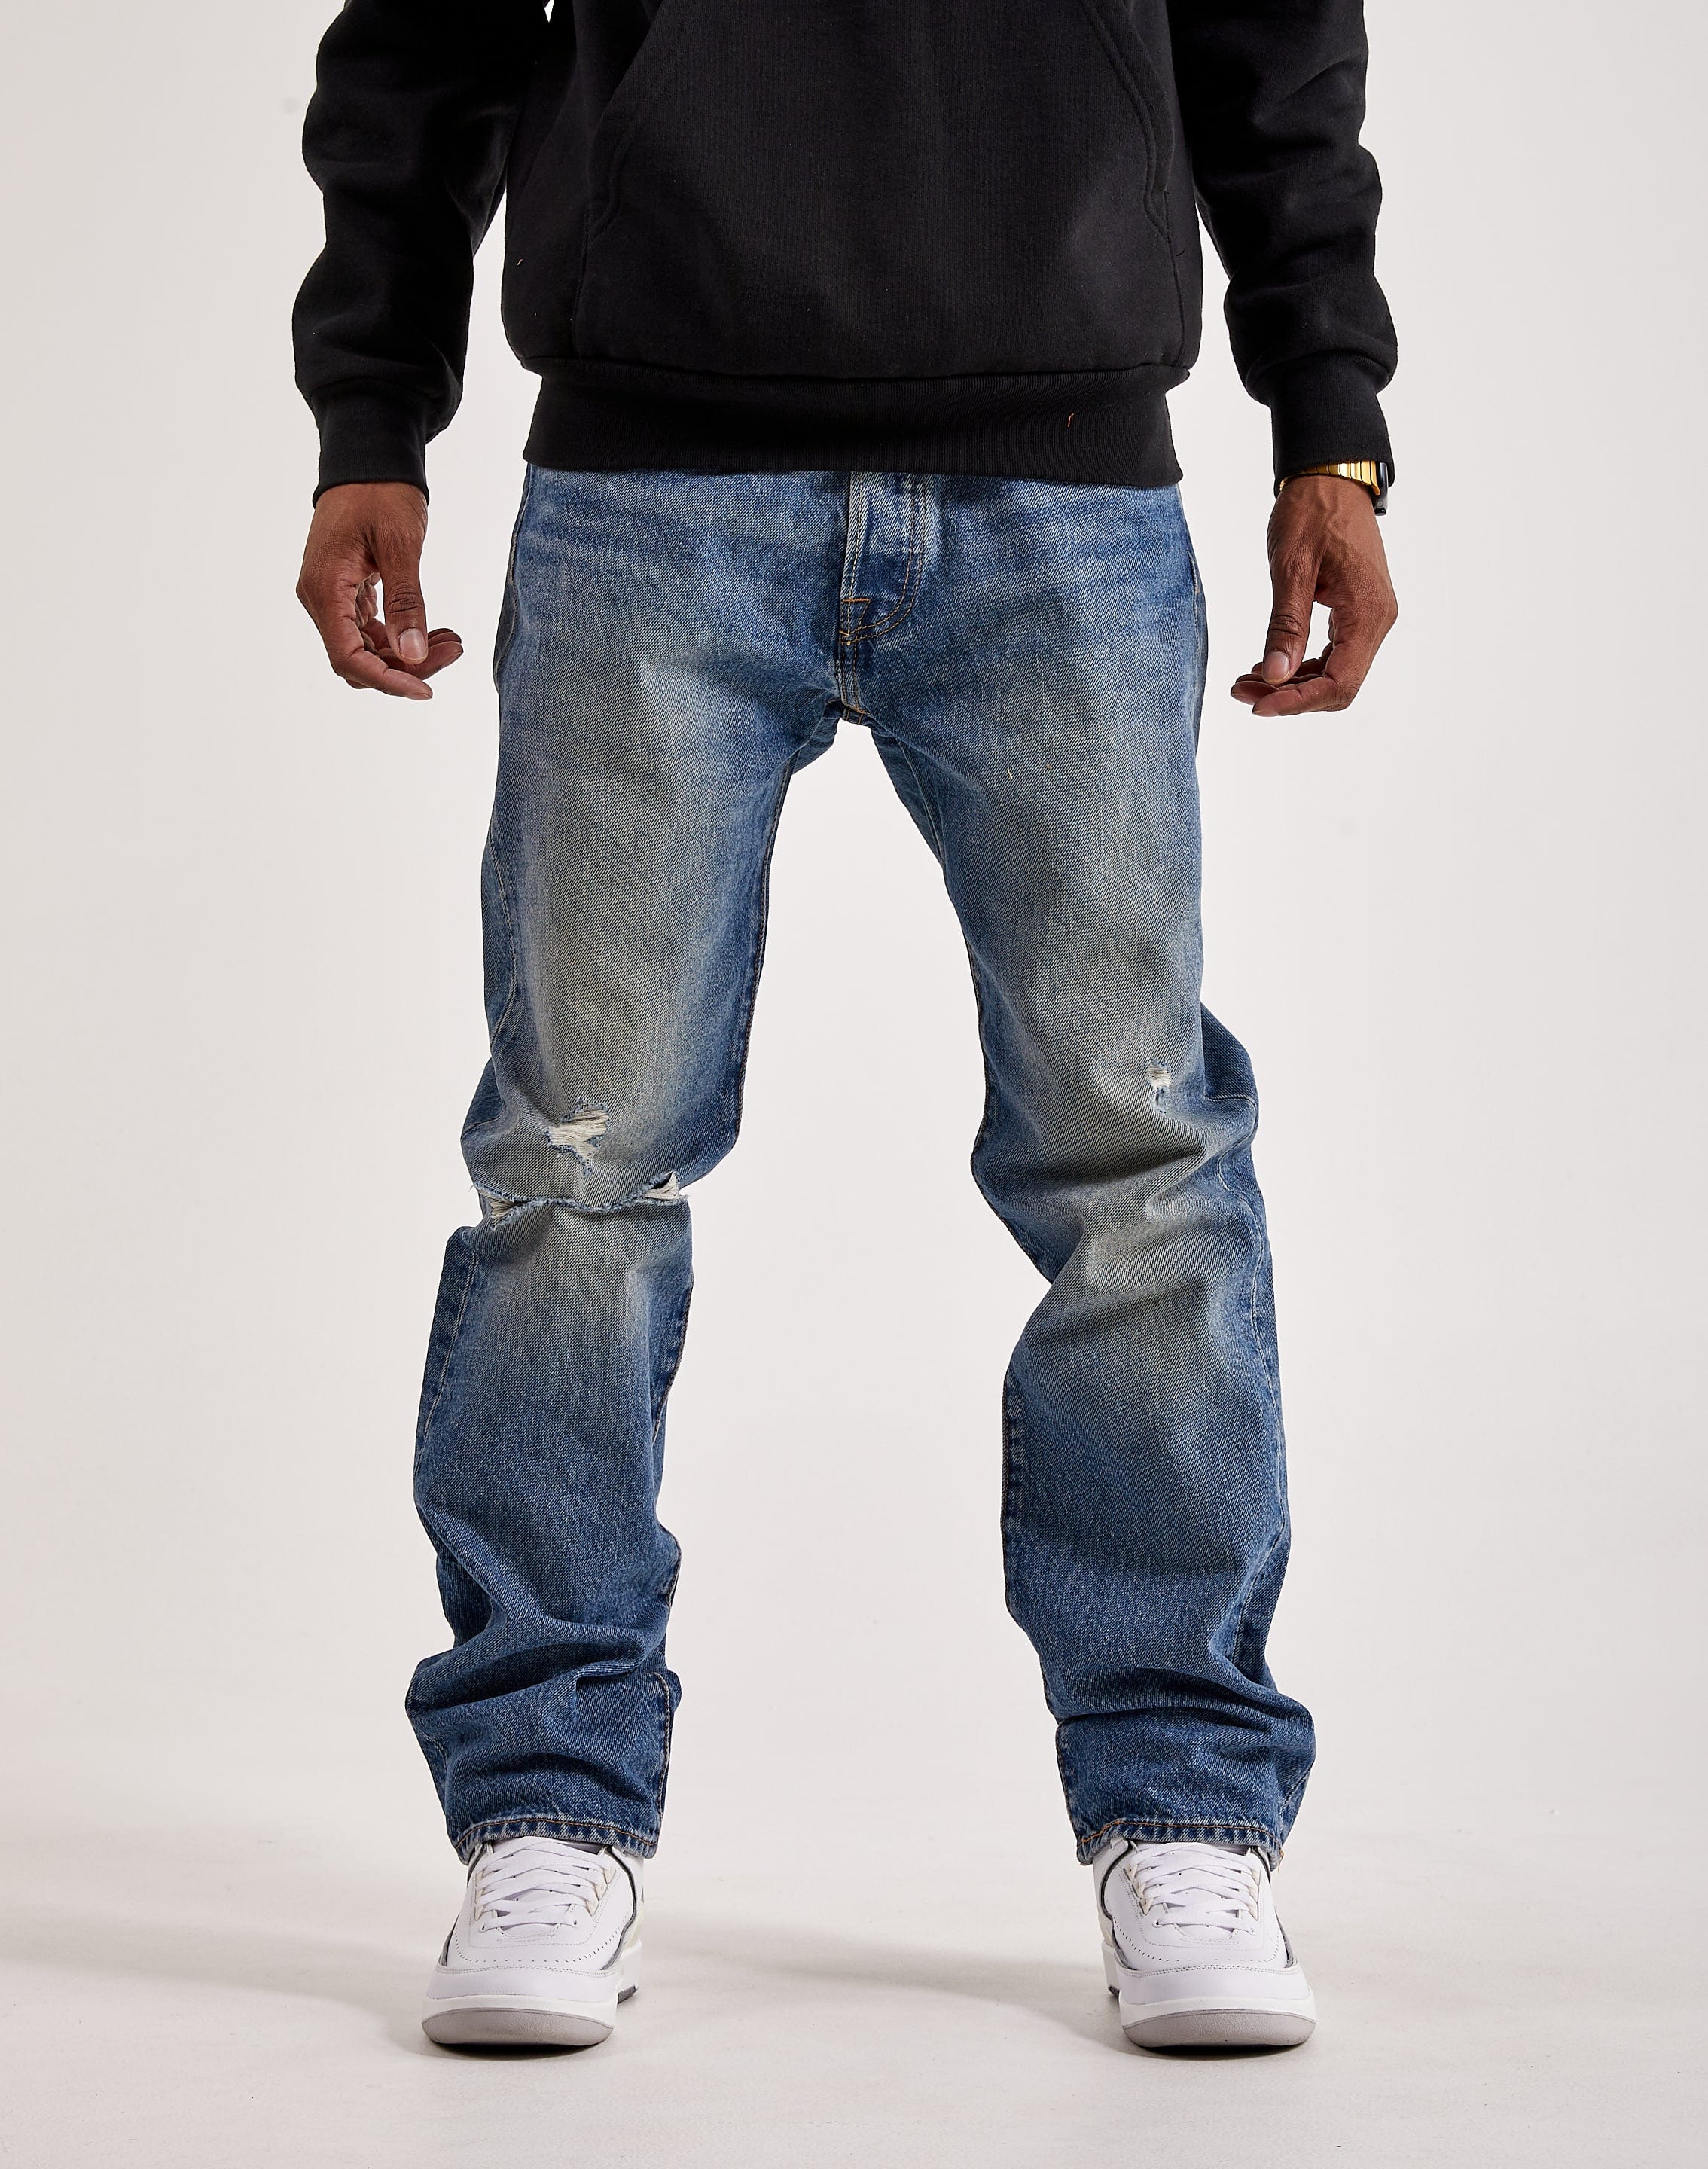 Levi's Mens 501 Original Fit Jeans